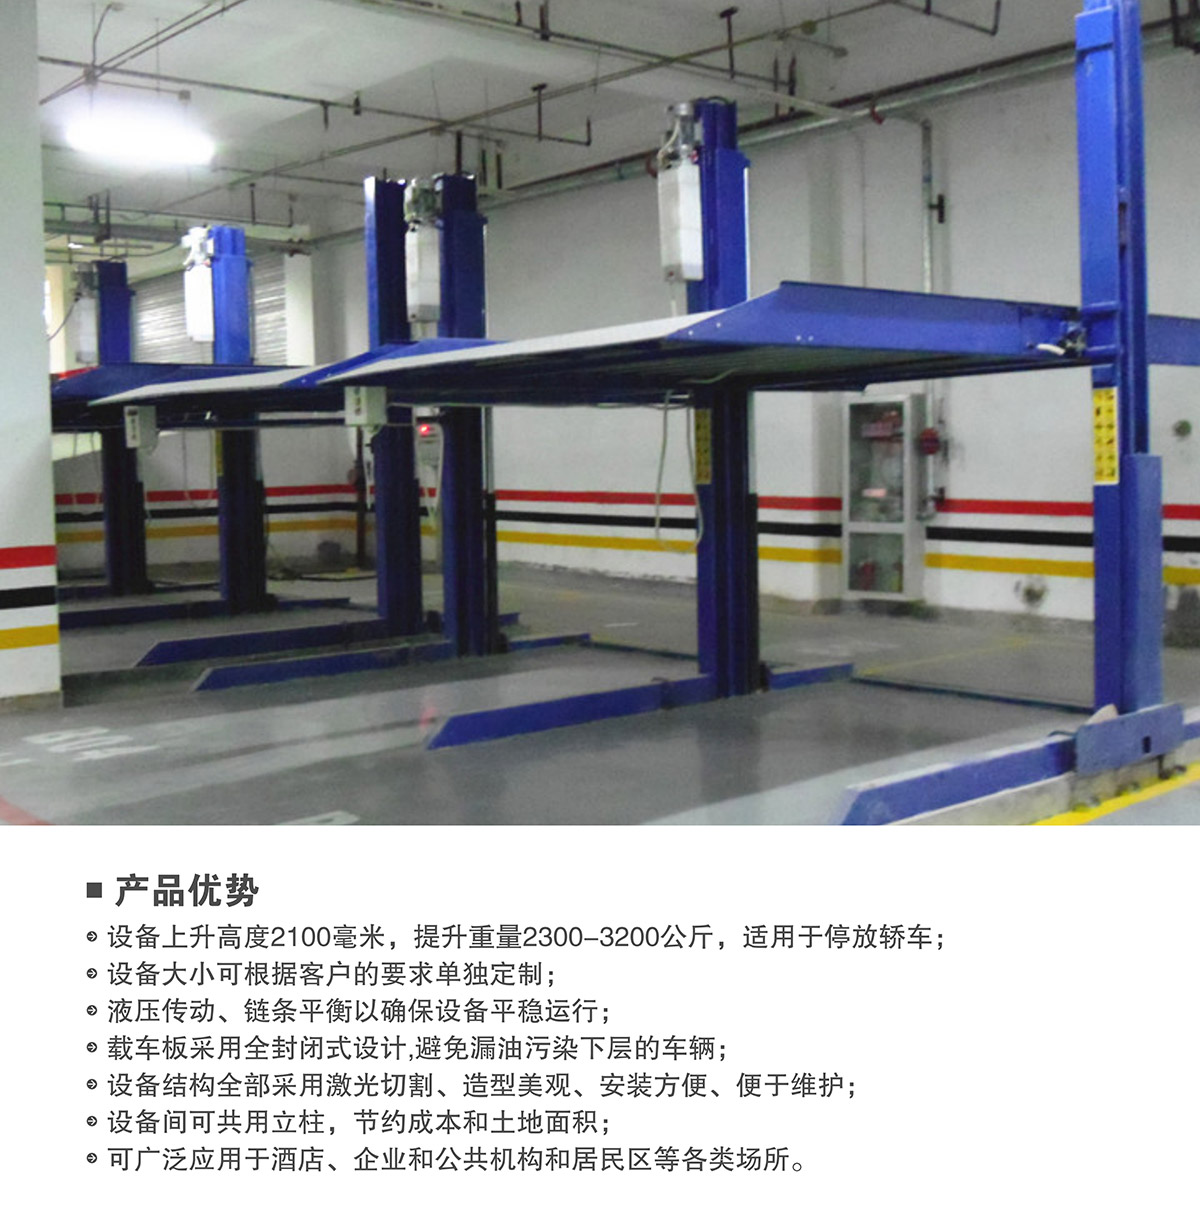 机械车库租赁两柱简易升降机械停车设备产品优势.jpg